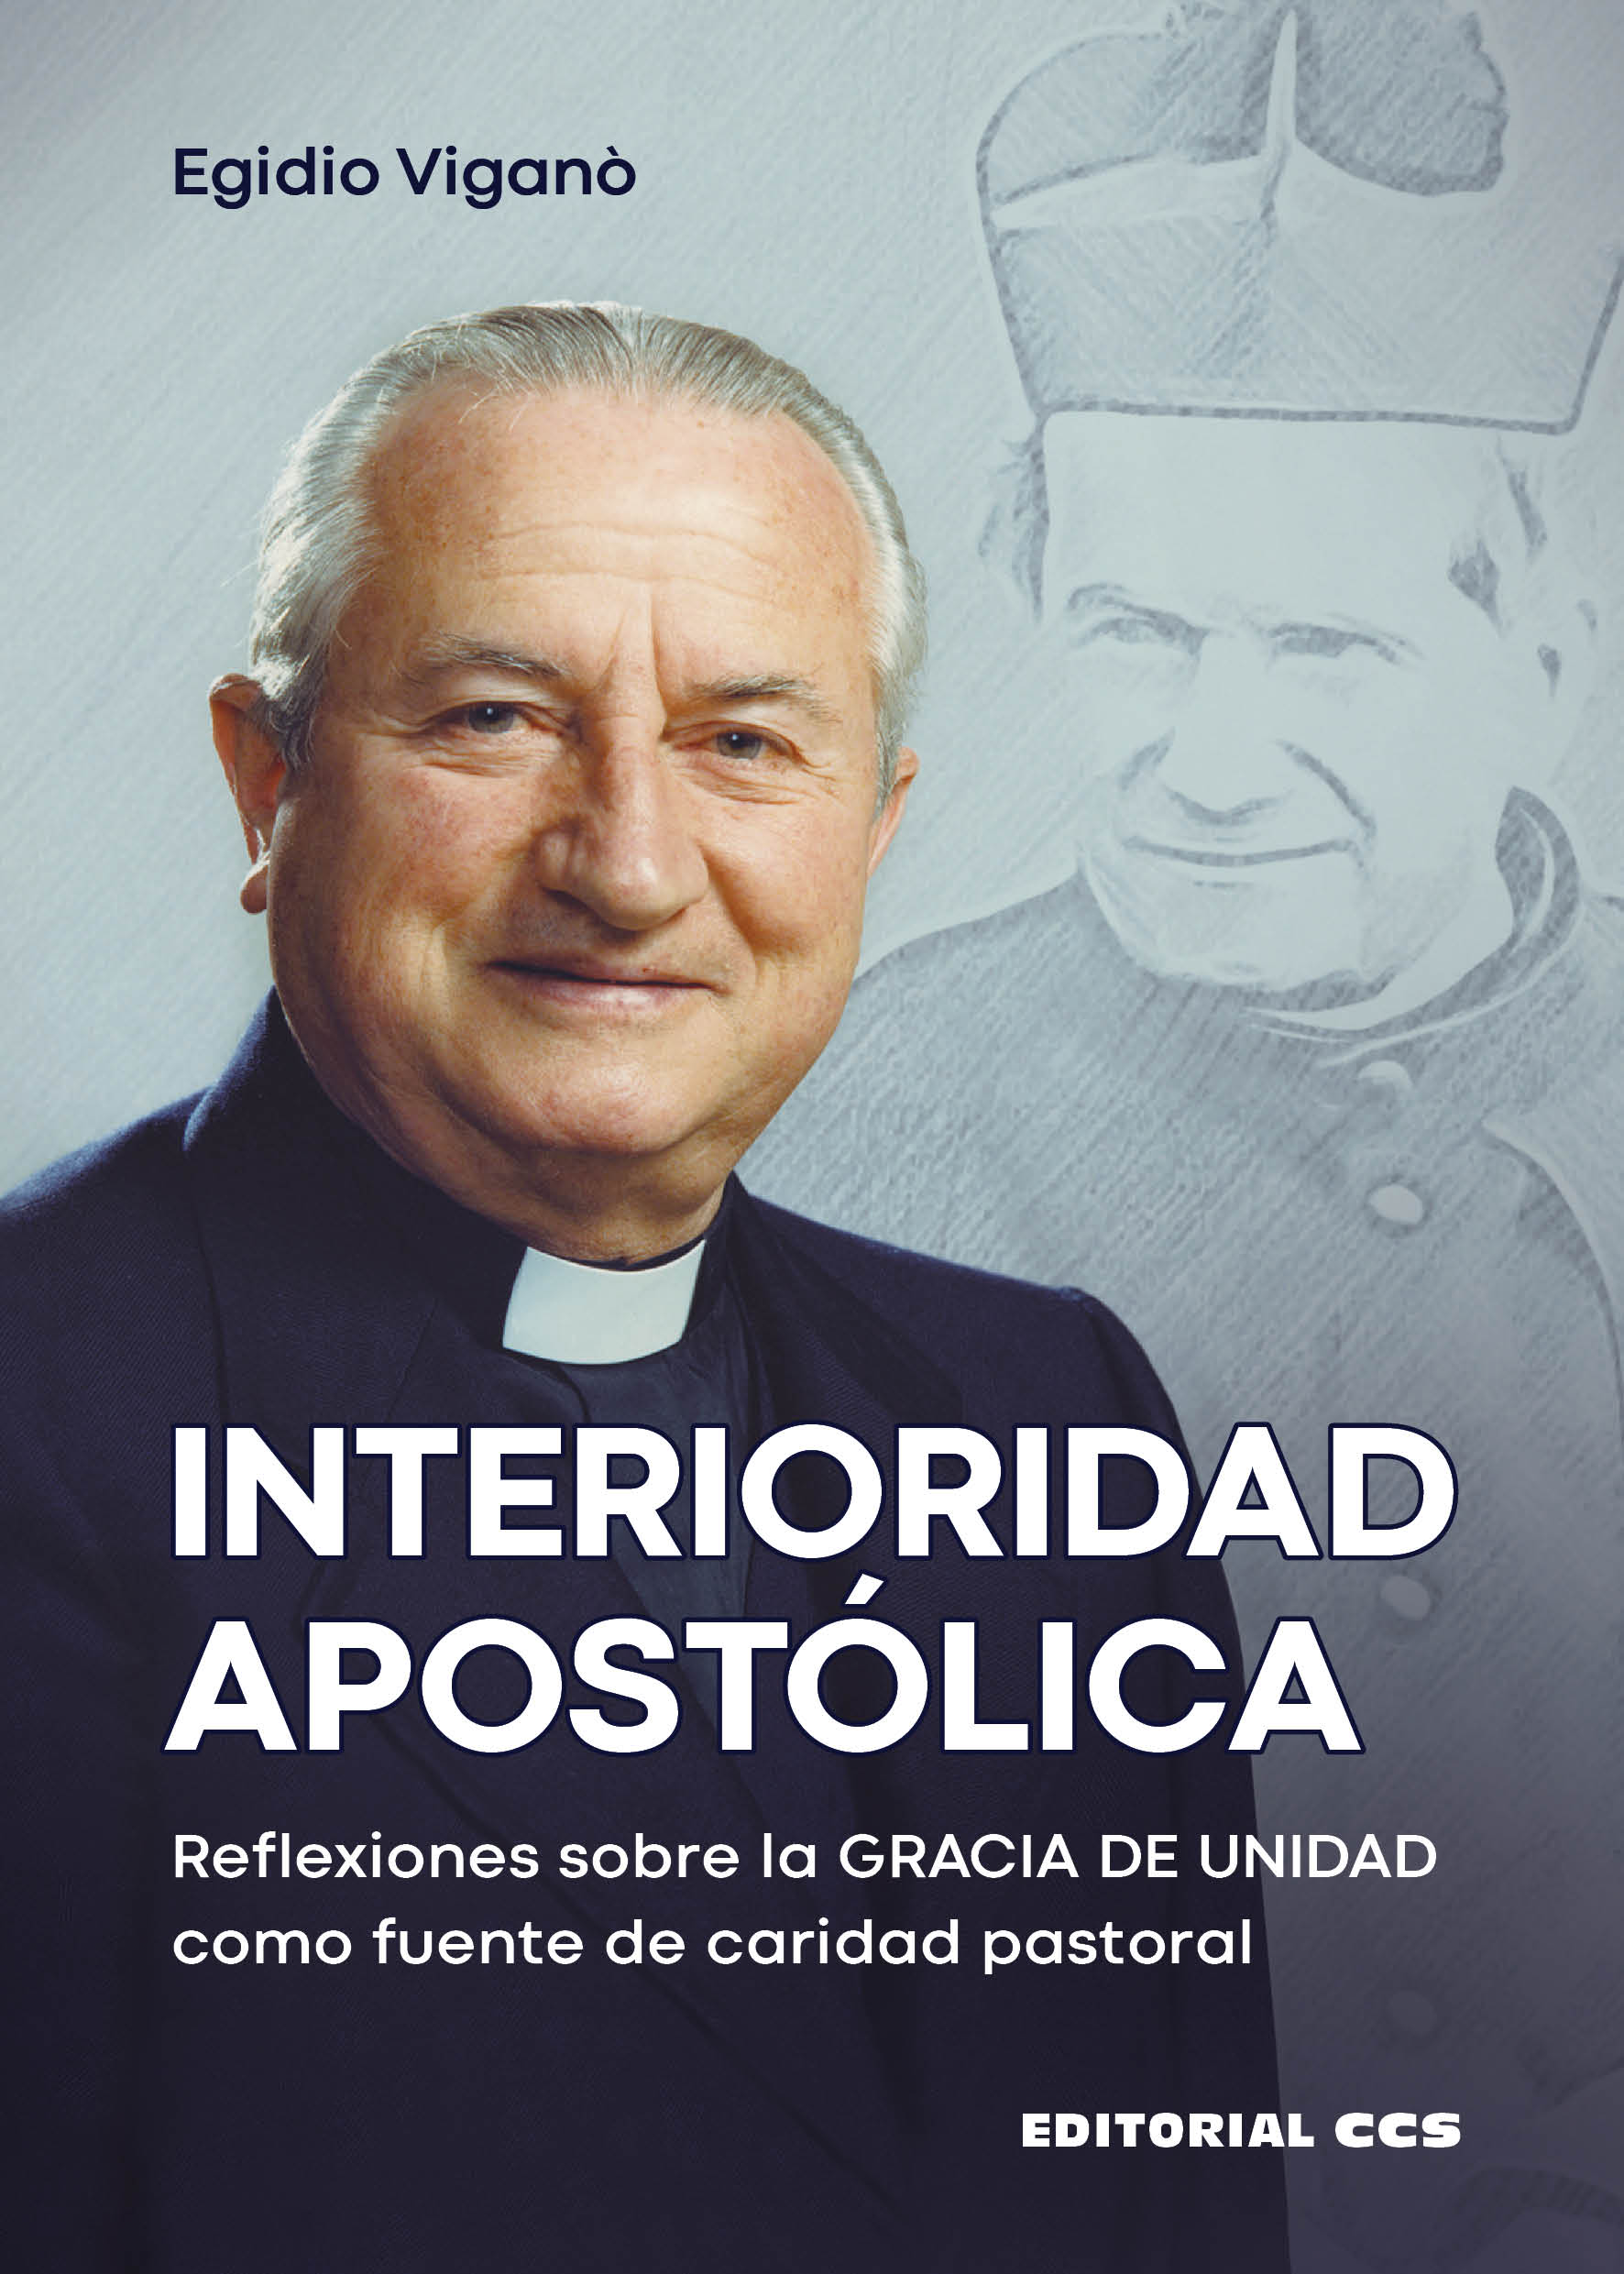 Interioridad apostólica   «Reflexiones sobre la GRACIA DE UNIDAD como fuente de caridad pastoral»